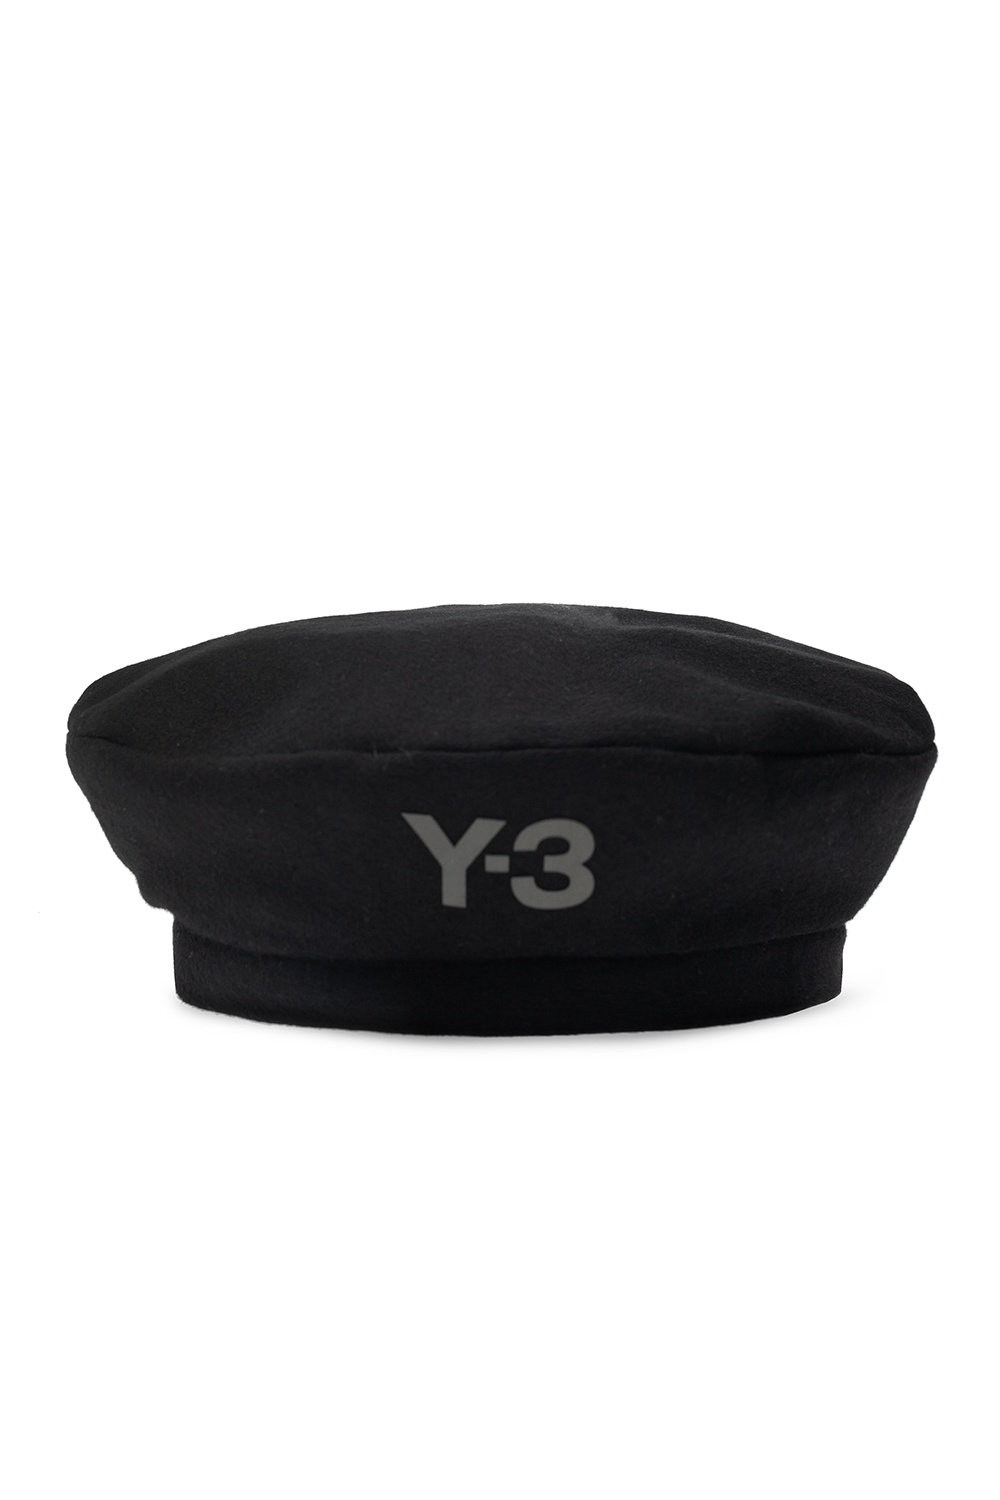 黑色品牌贝雷帽Y-3 Yohji Yamamoto - Vitkac 中国